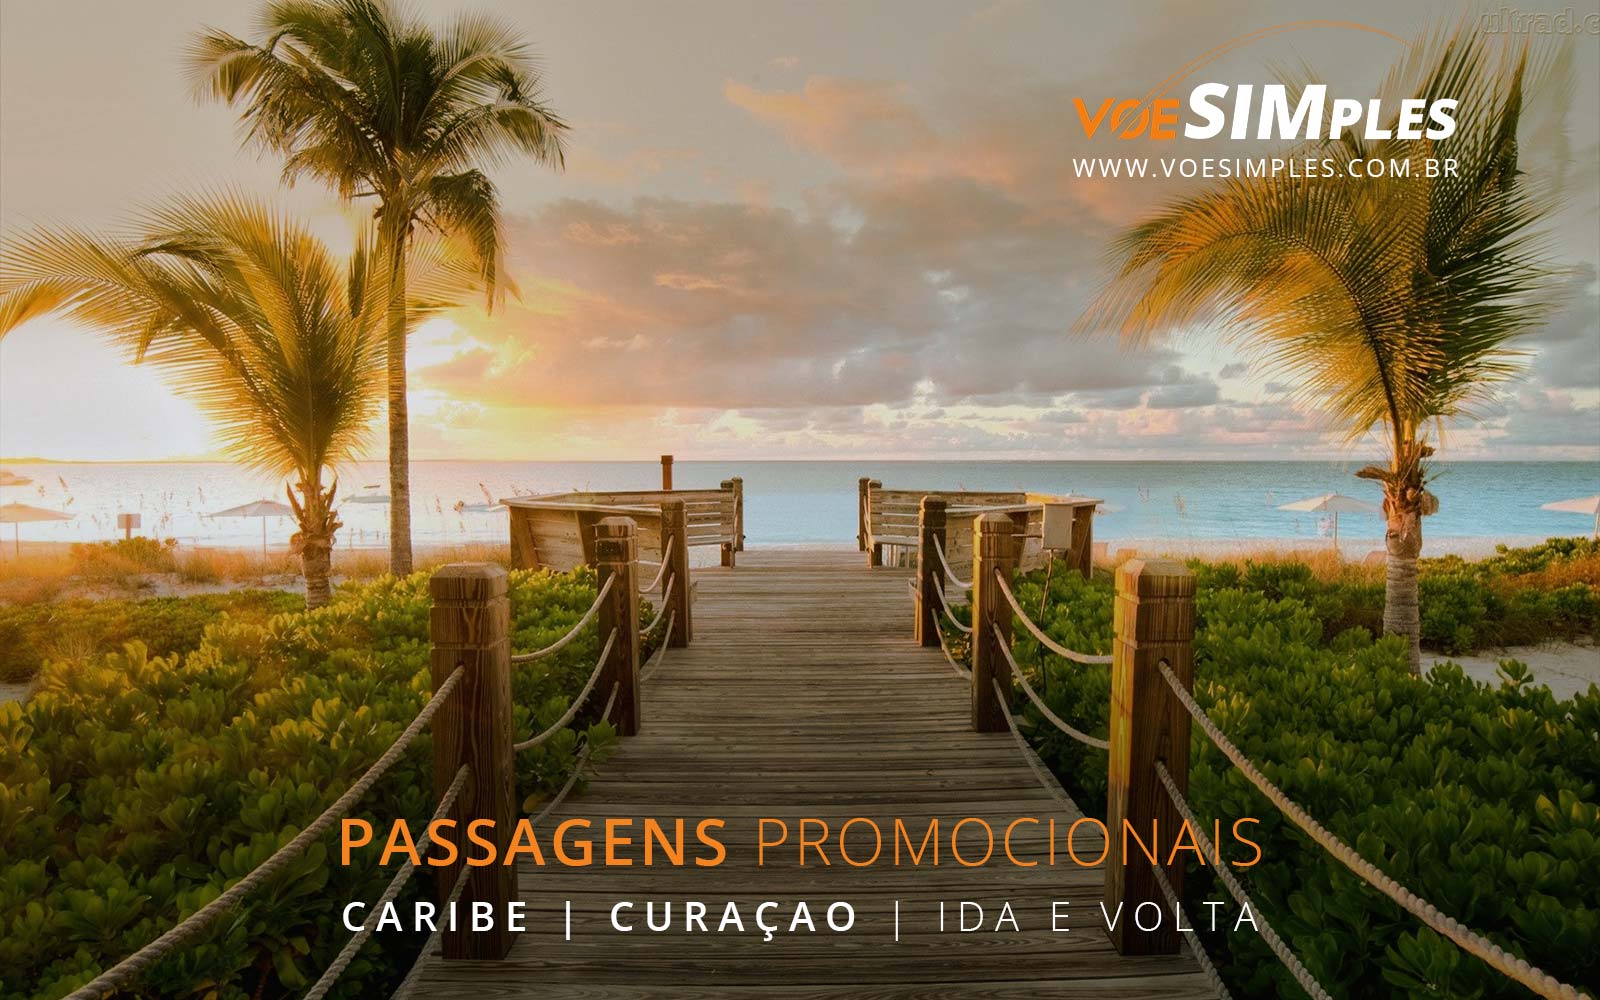 Promoção de passagens aéreas para Curaçao no Caribe